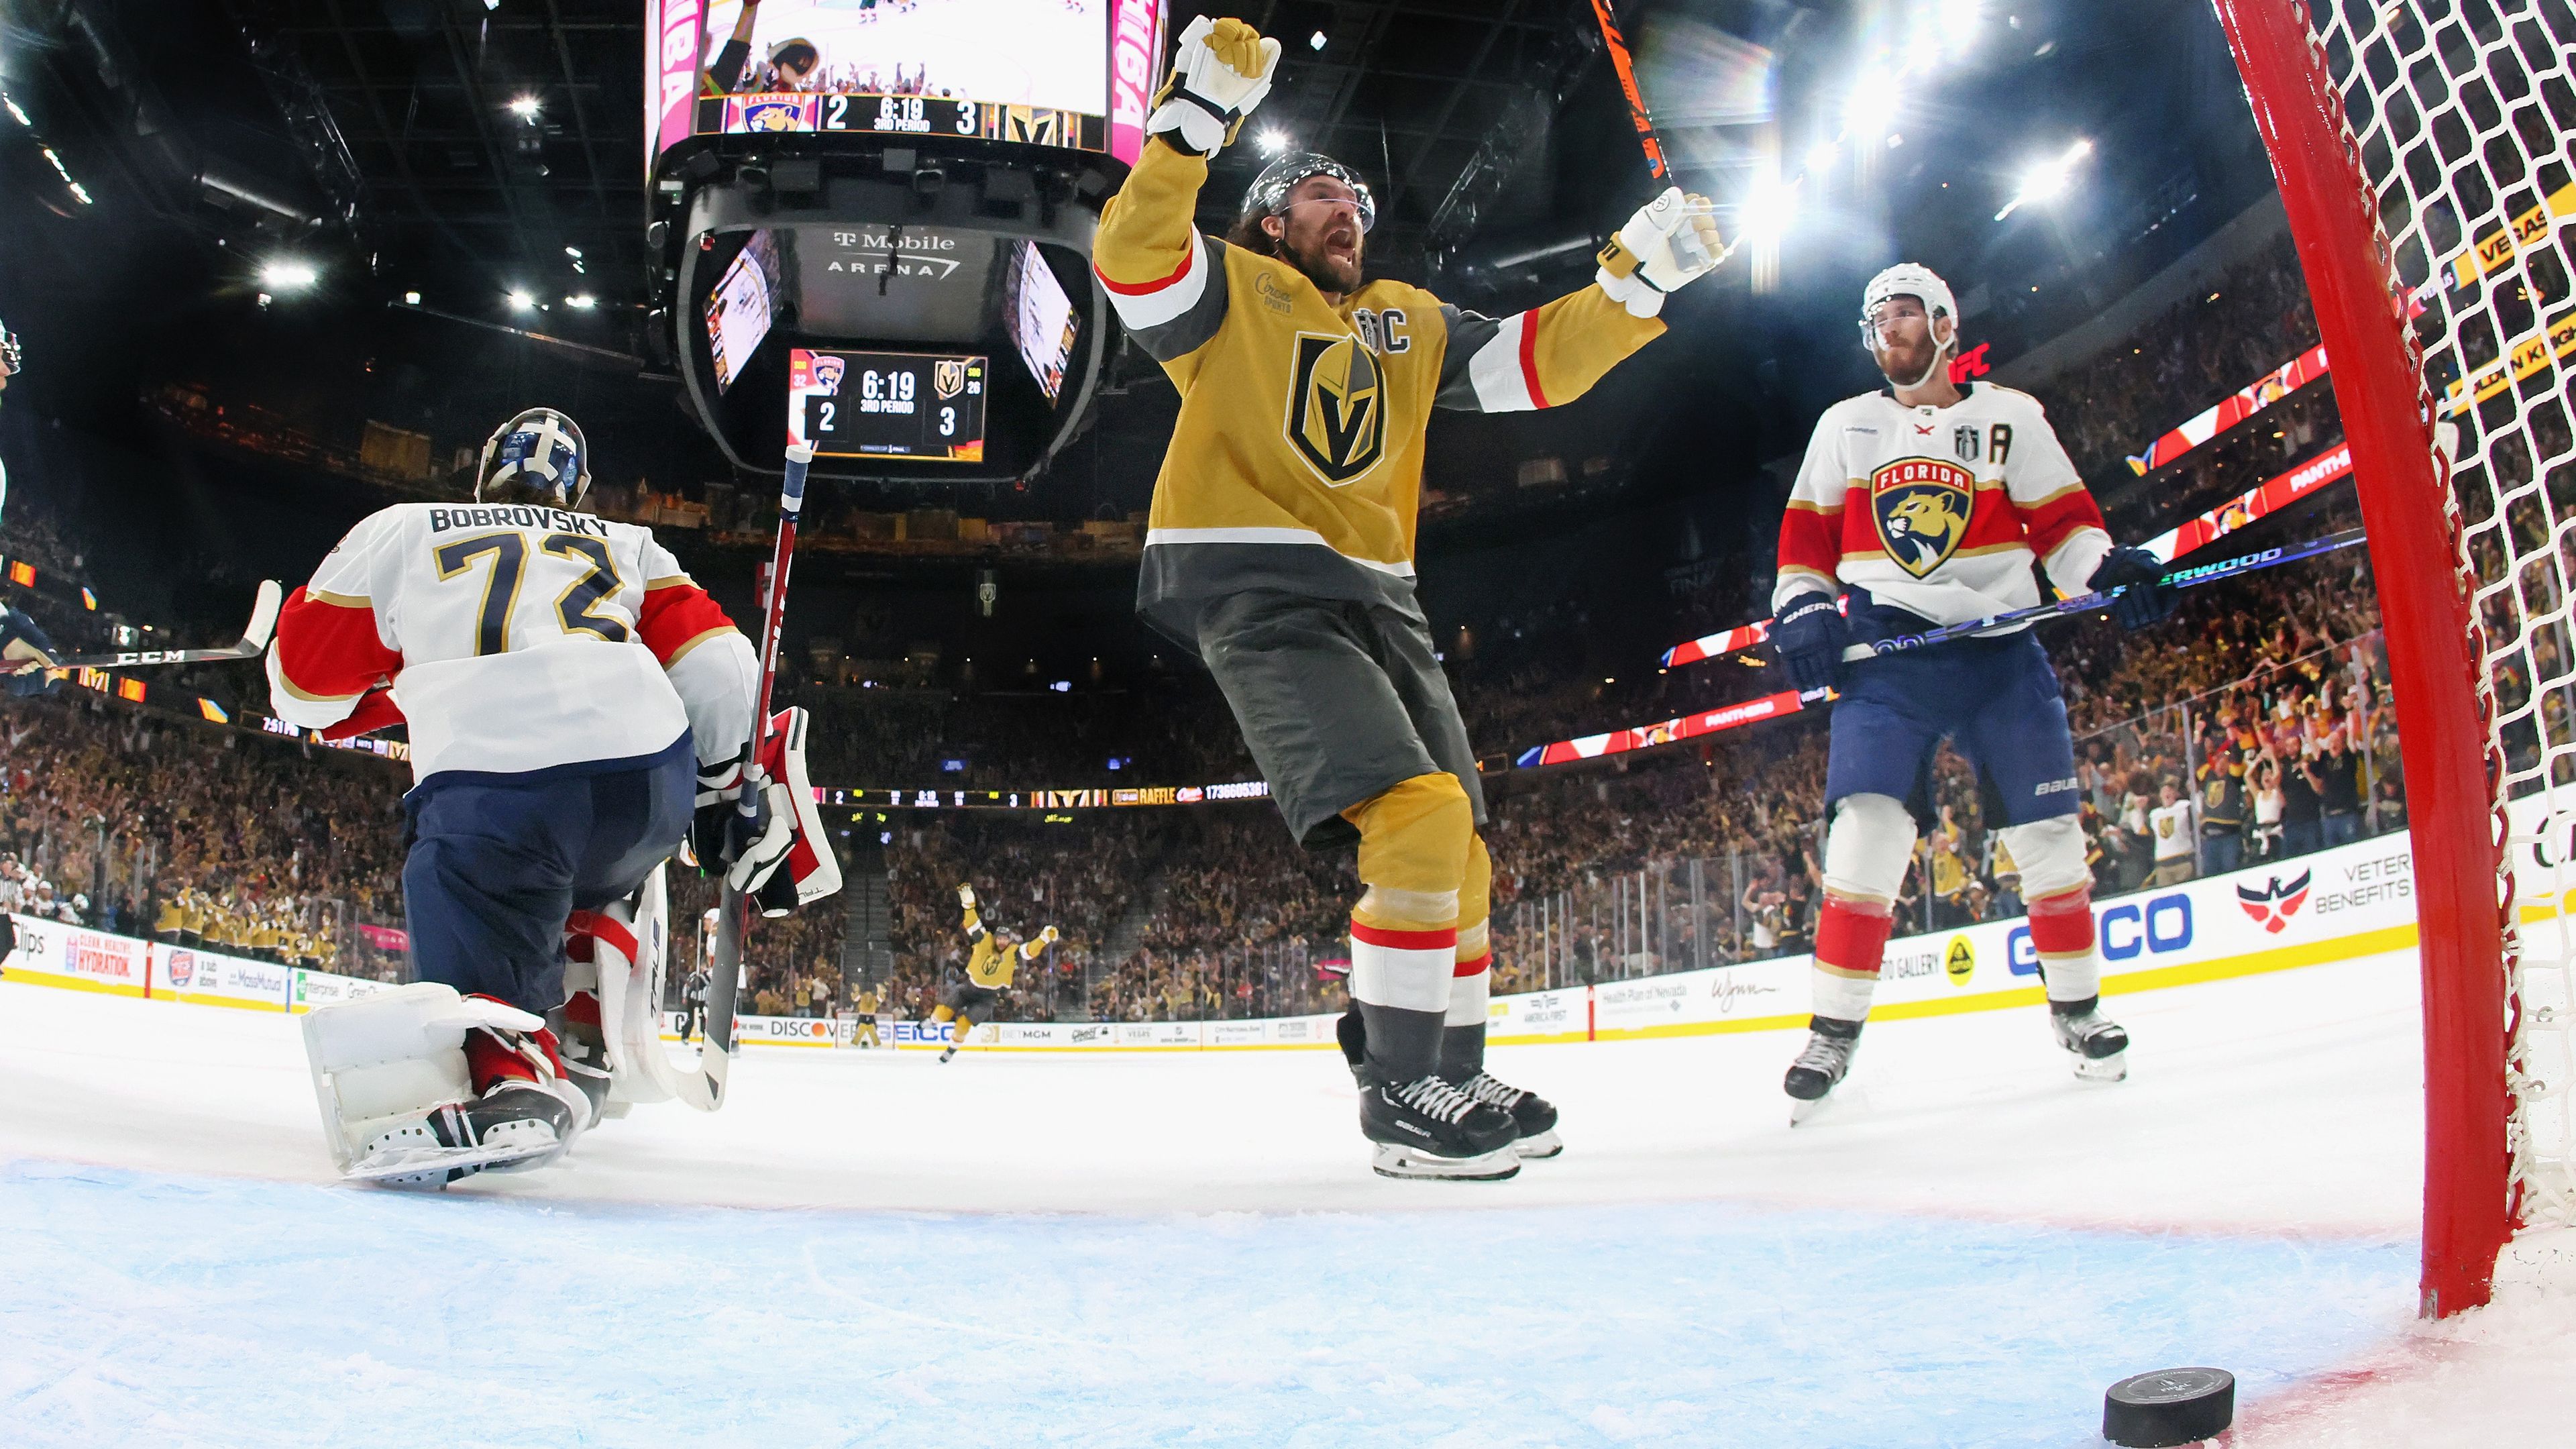 A Vegas nyerte az NHL nagydöntőjének első felvonását – videóval